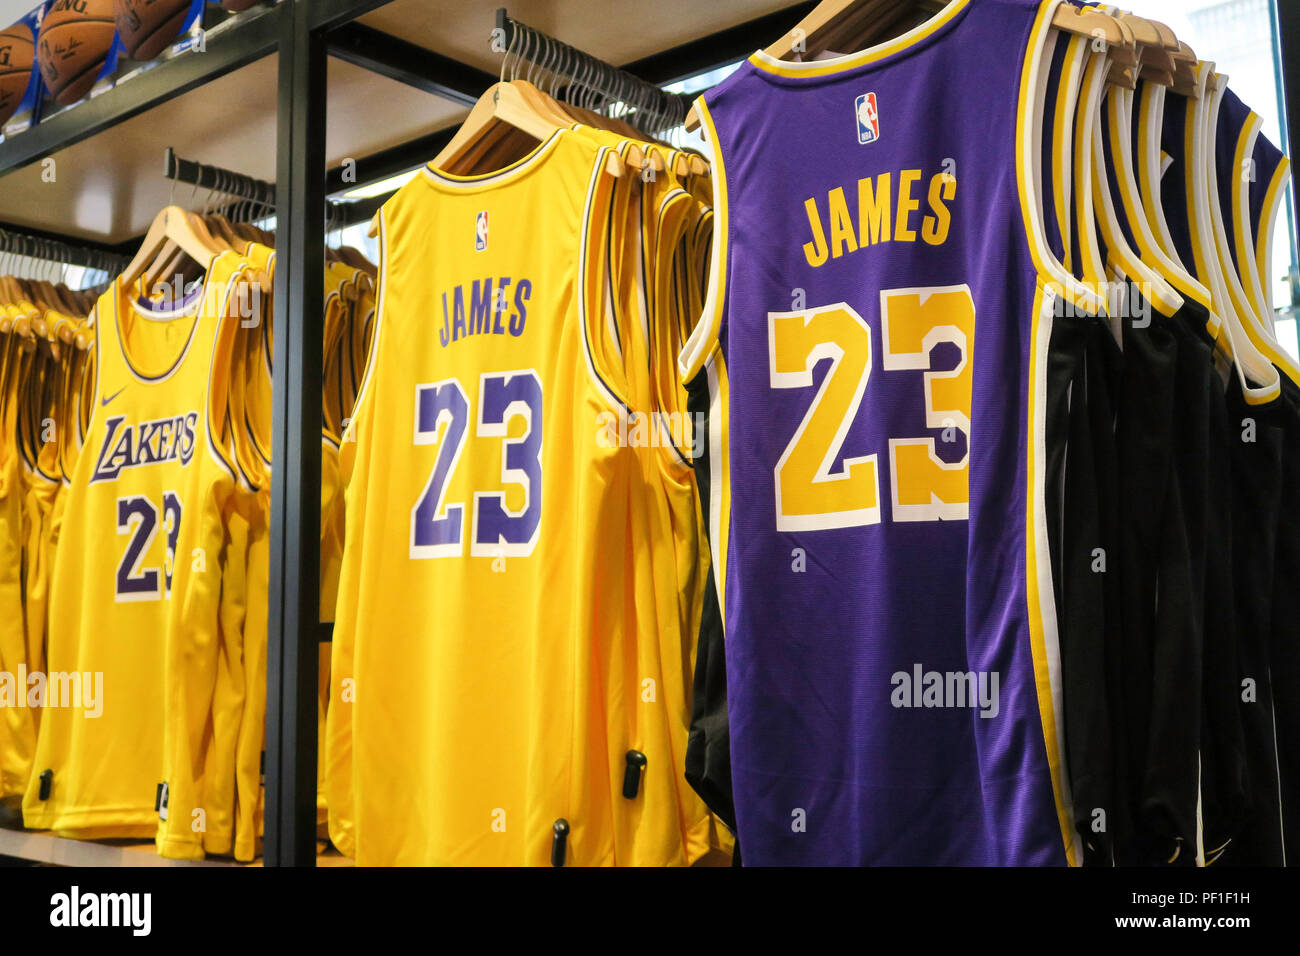 LeBron James et Lakers Branded Merchandise au magasin phare de la NBA, 545 Fifth Avenue, New York, États-Unis Banque D'Images